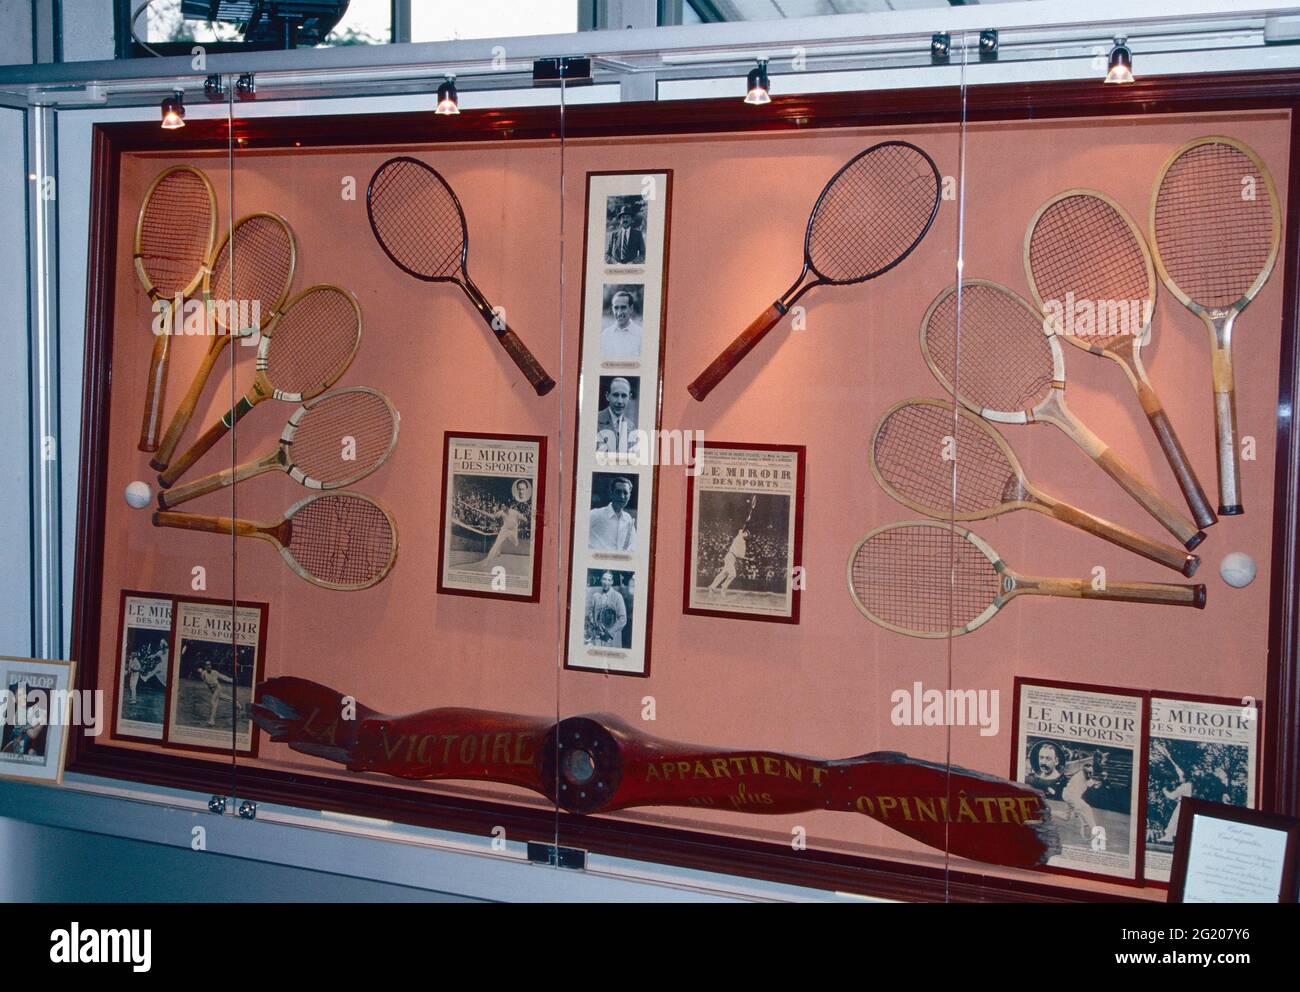 Colección de raquetas de tenis de madera de los antiguos campeones, Roland Garros, Francia 1991 Foto de stock